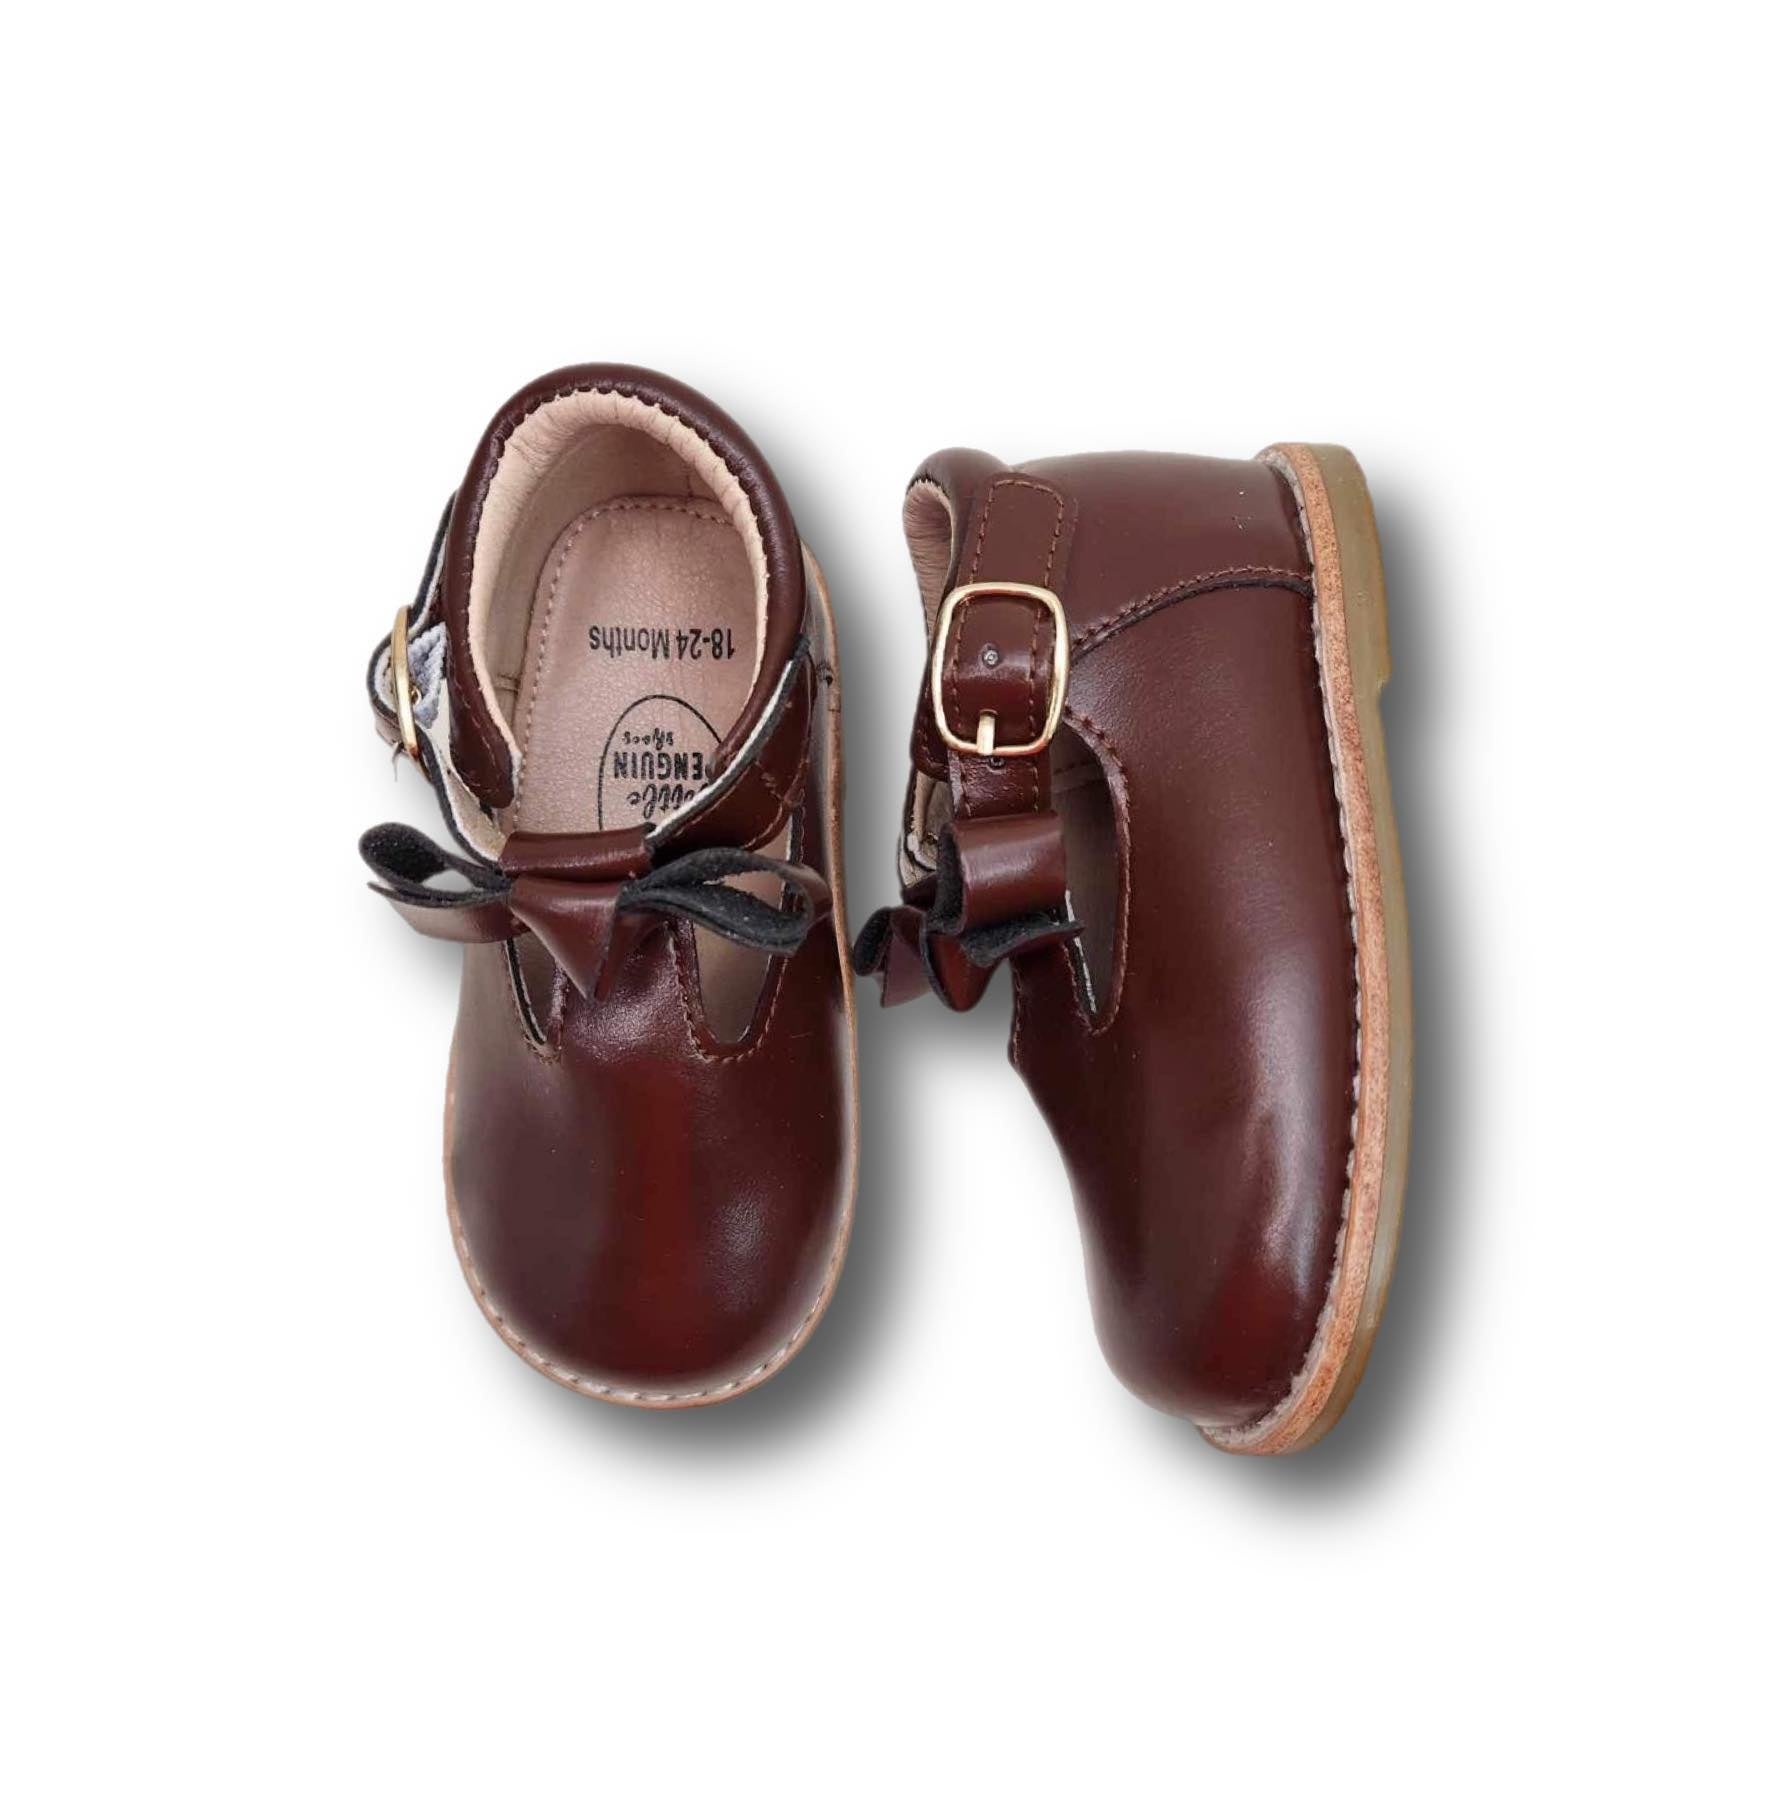 CAMILA Children's Boot in Dark Brown Leather